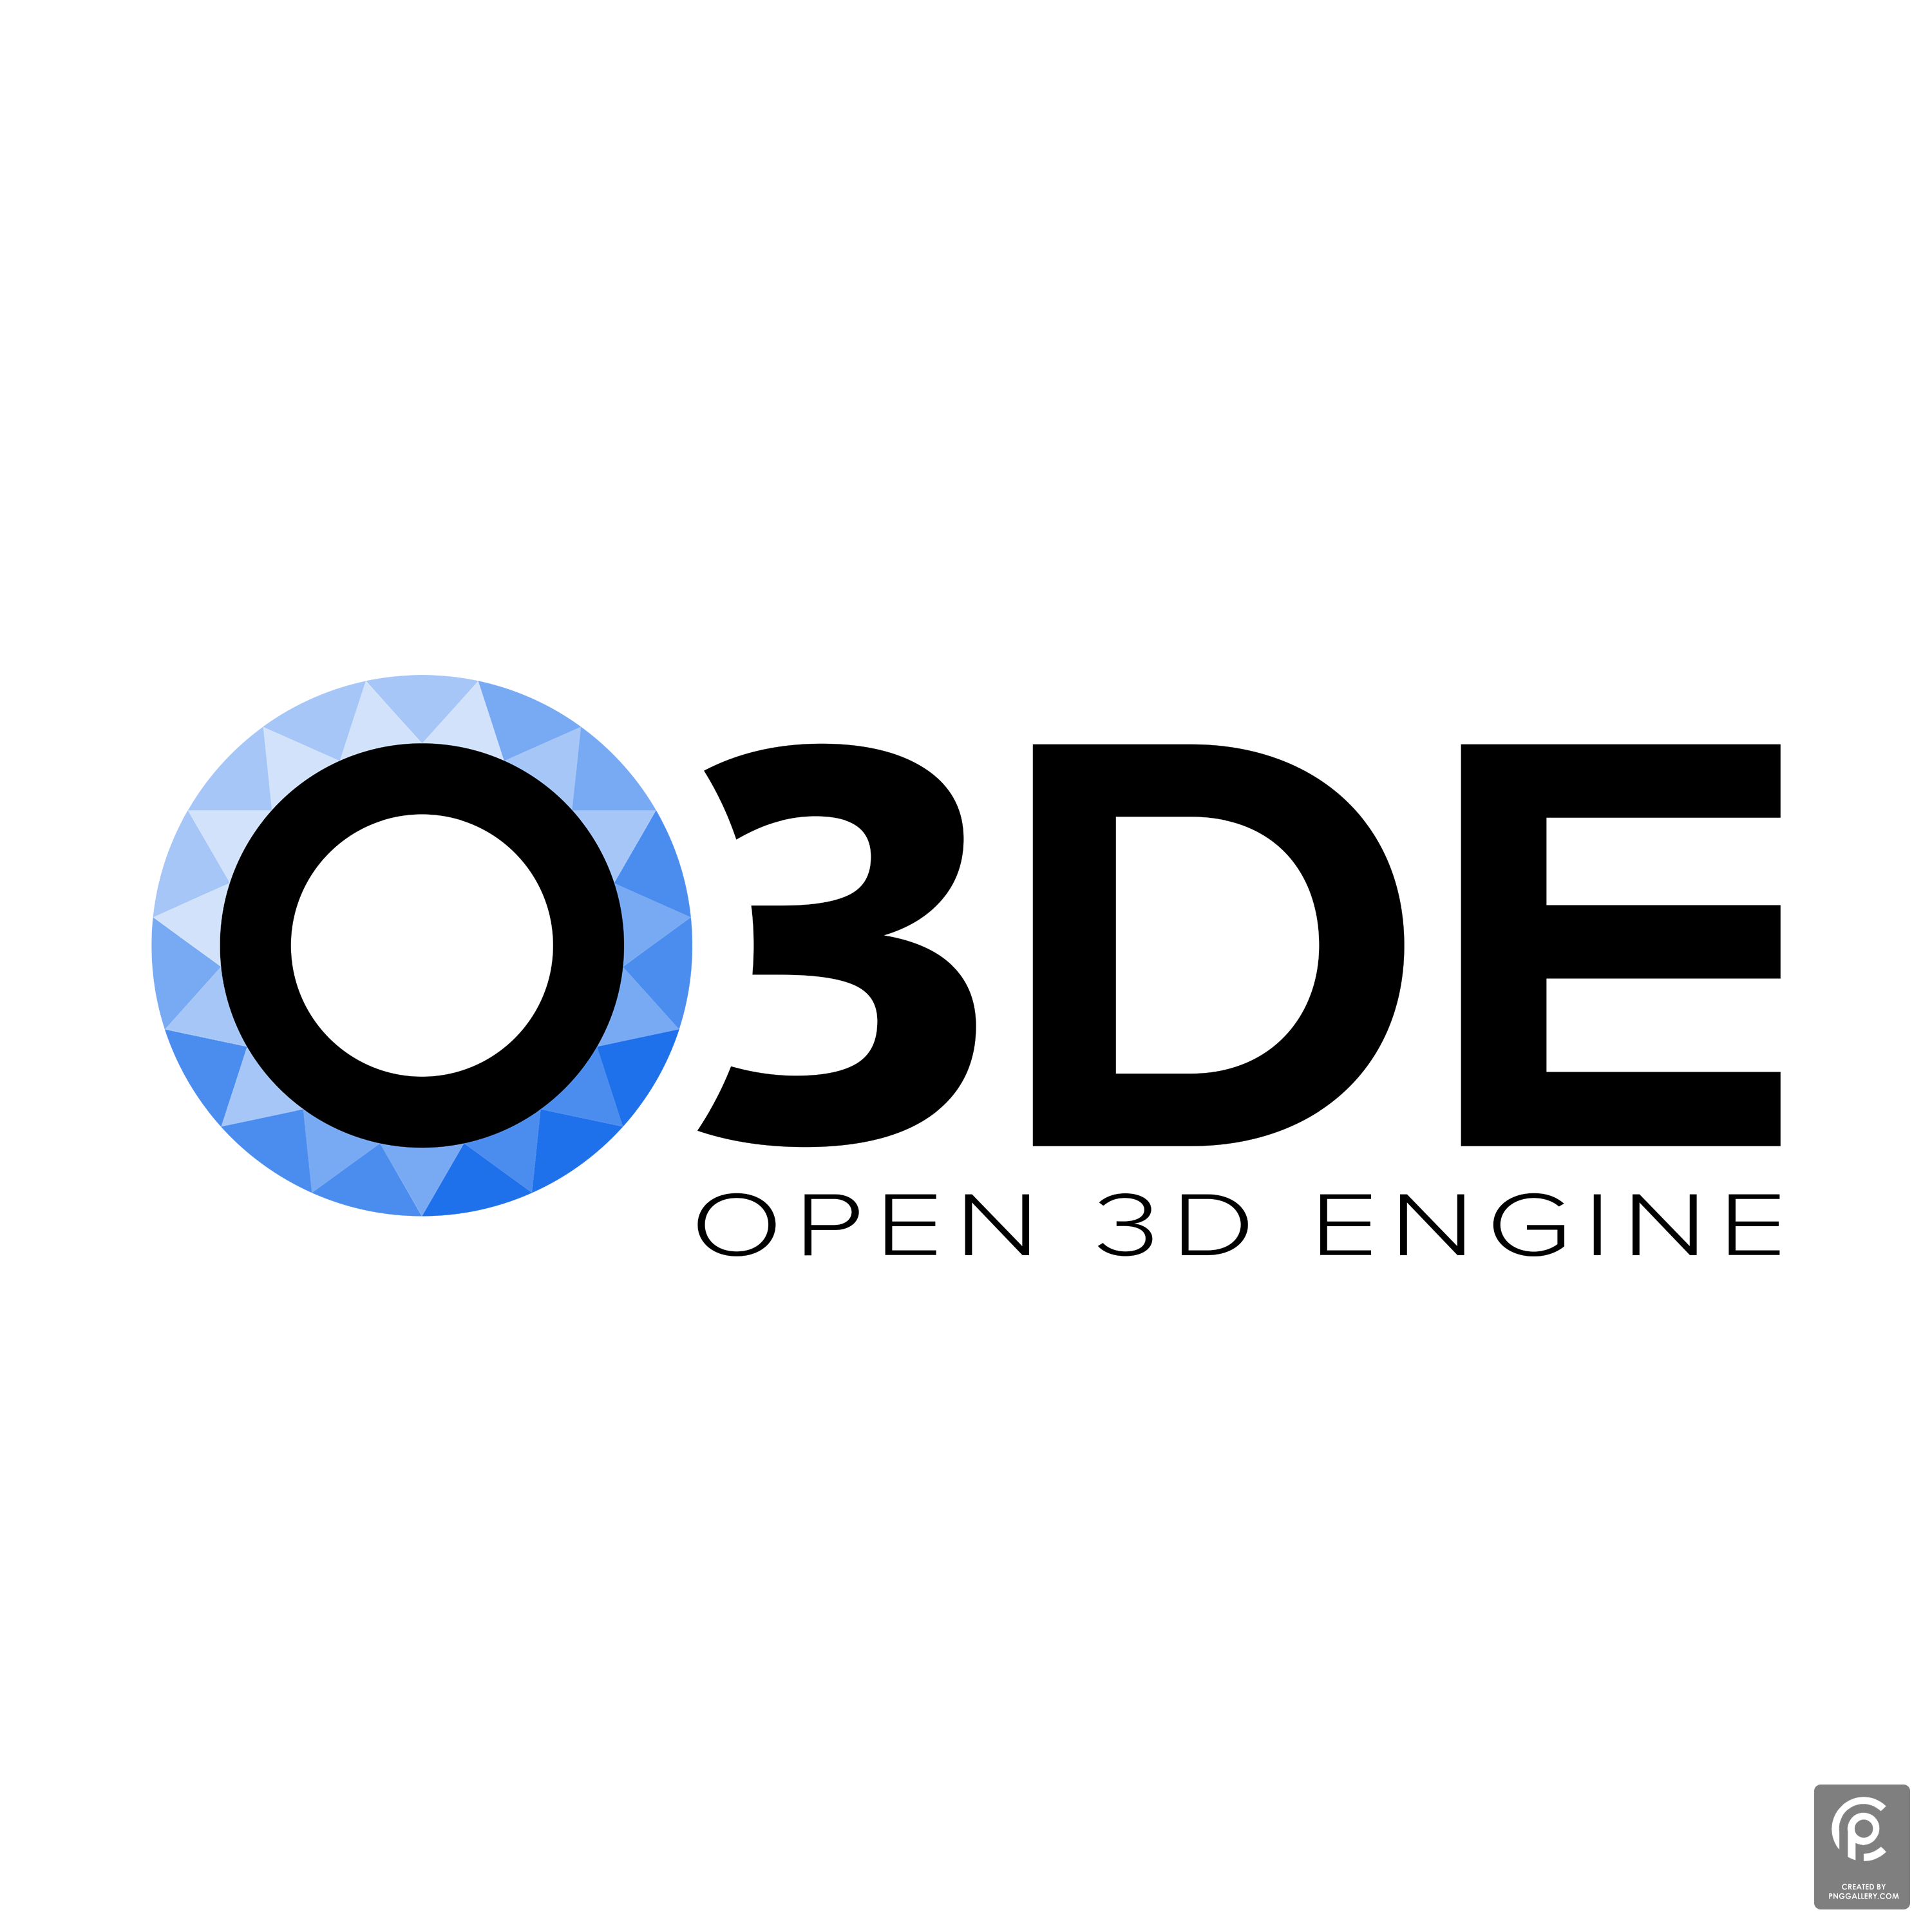 O3DE Logo Transparent Gallery